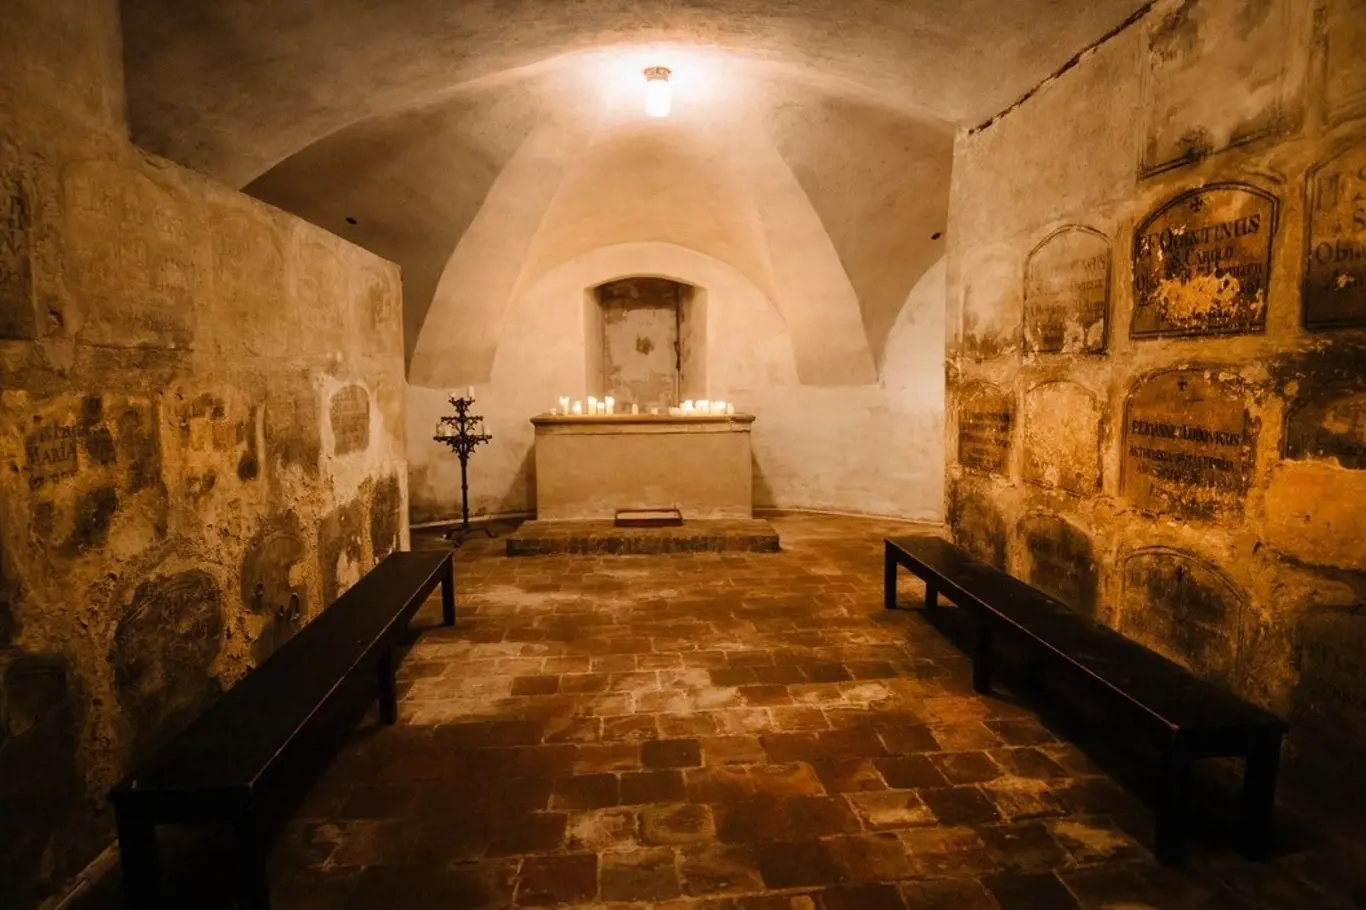 Pokud se rádi bojíte, navštivte katakomby pod kostelem Panny Marie Vítězné